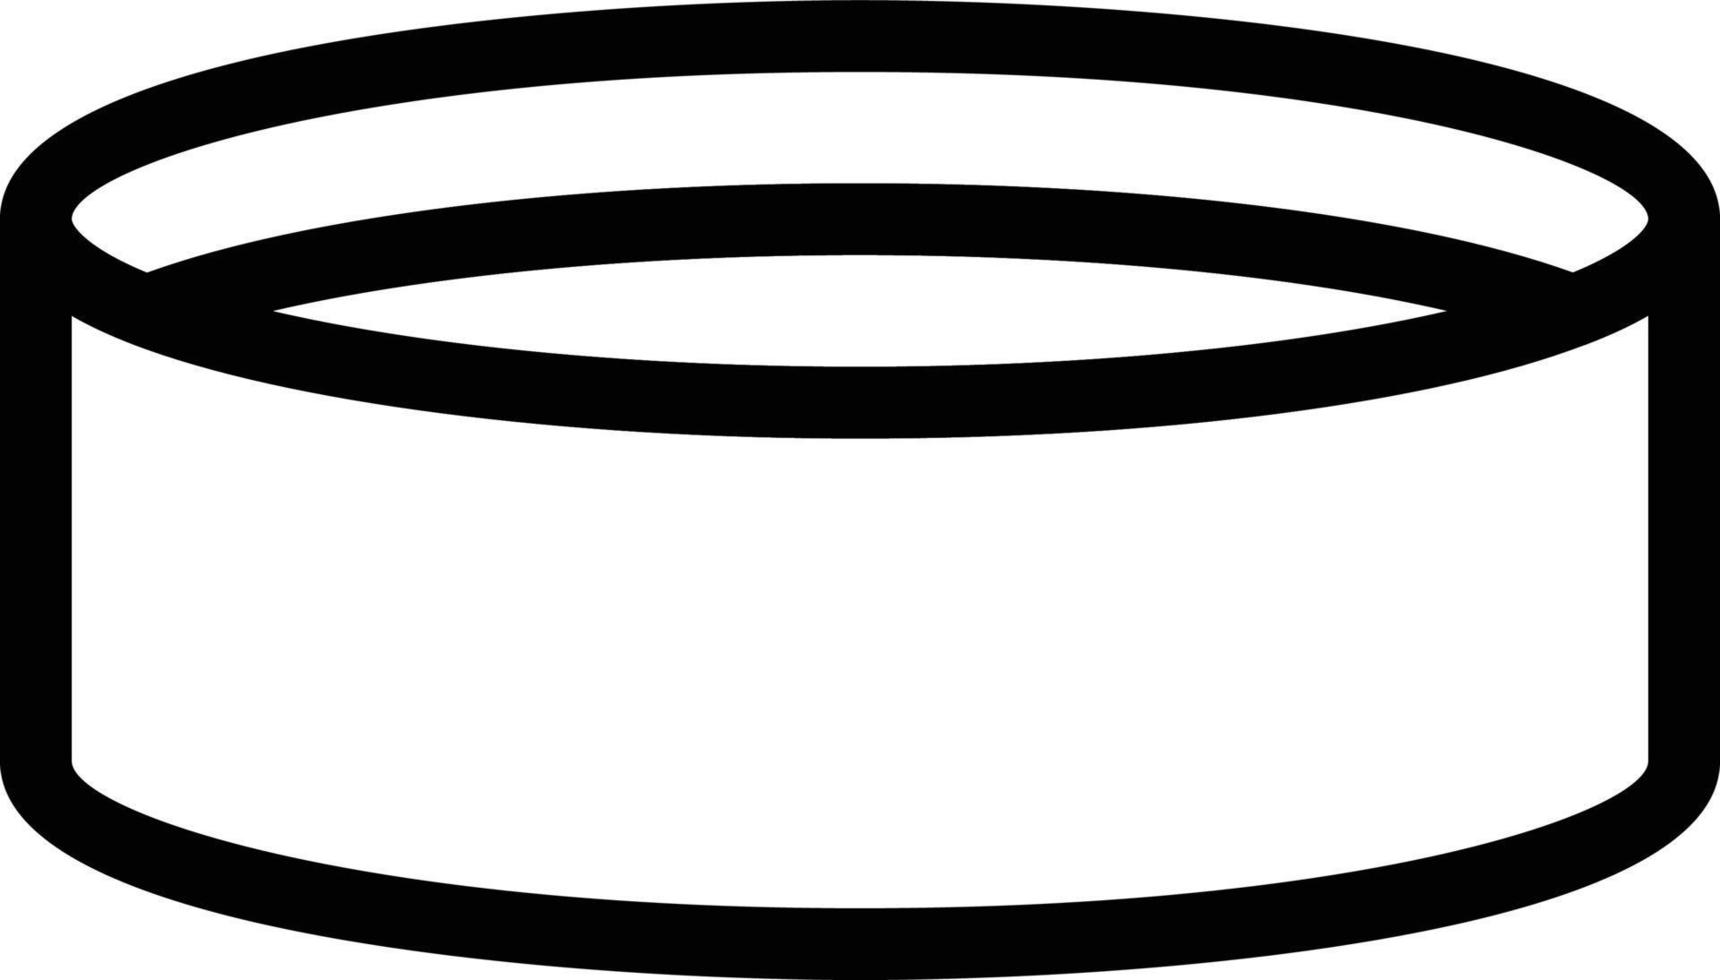 plattenvektorillustration auf einem hintergrund. hochwertige symbole. vektorikonen für konzept und grafikdesign. vektor